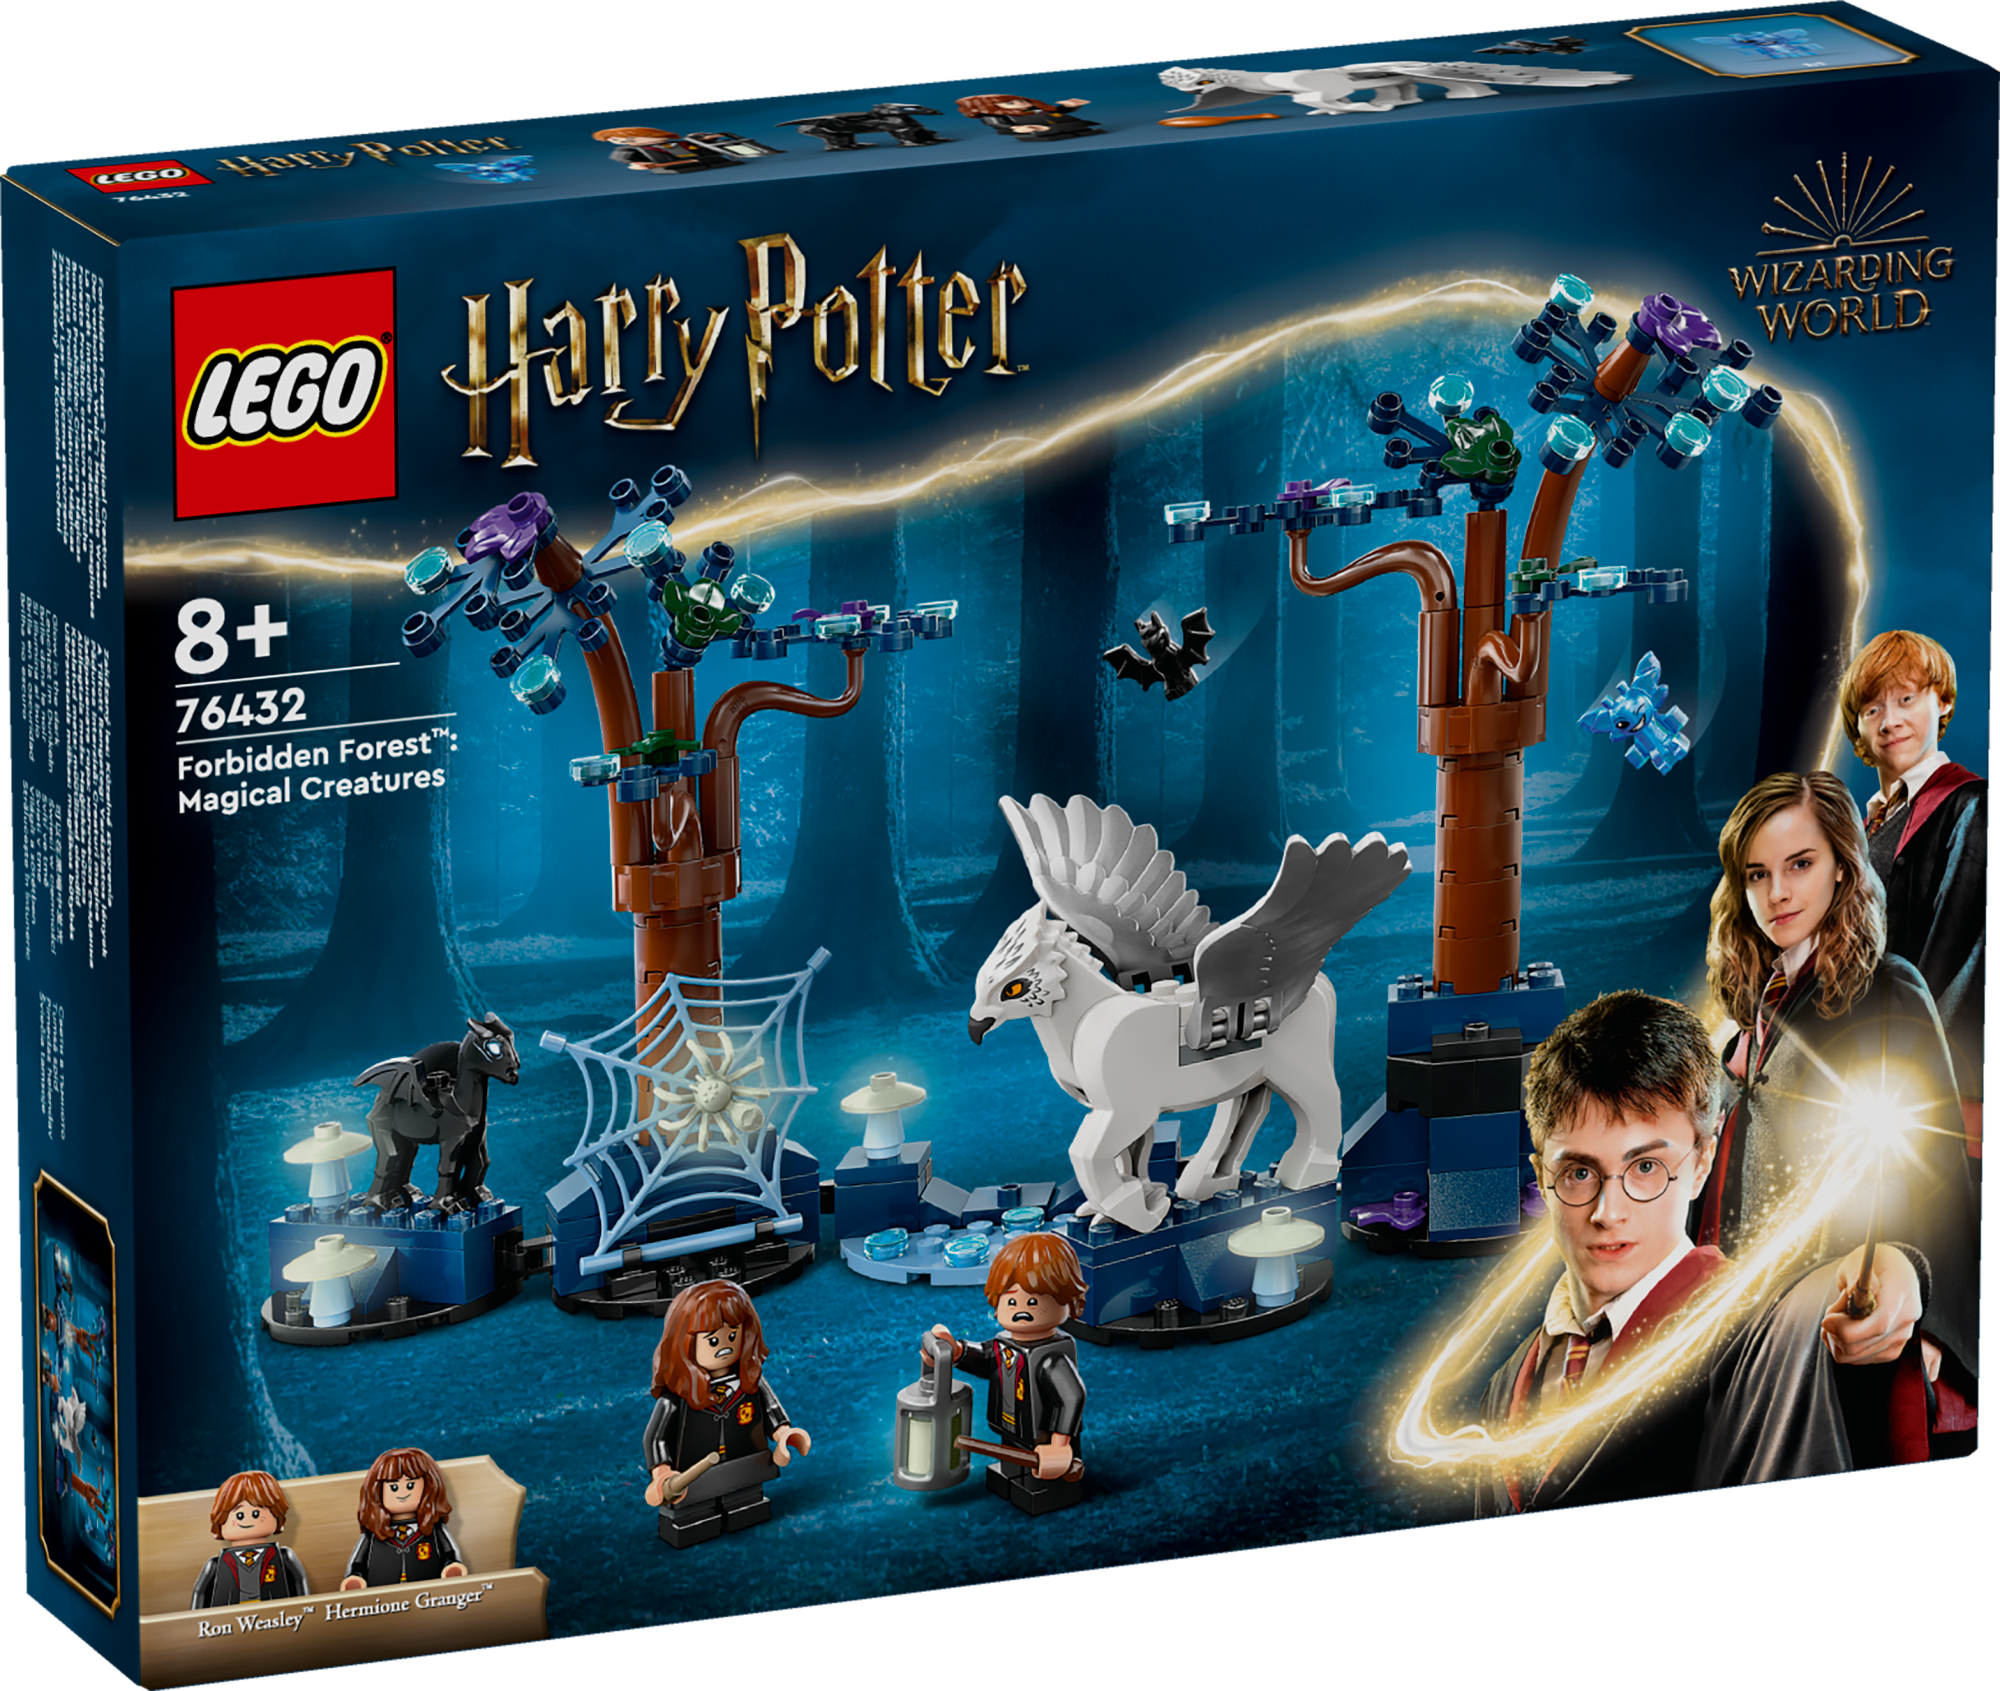 Selle LEGO Harry Potter-i lastele mõeldud fantaasiamängukomplektiga (76432) ehitad LEGO klotsidest Keelatud metsa, mis on täis maagilisi olendeid
The post LEGO 